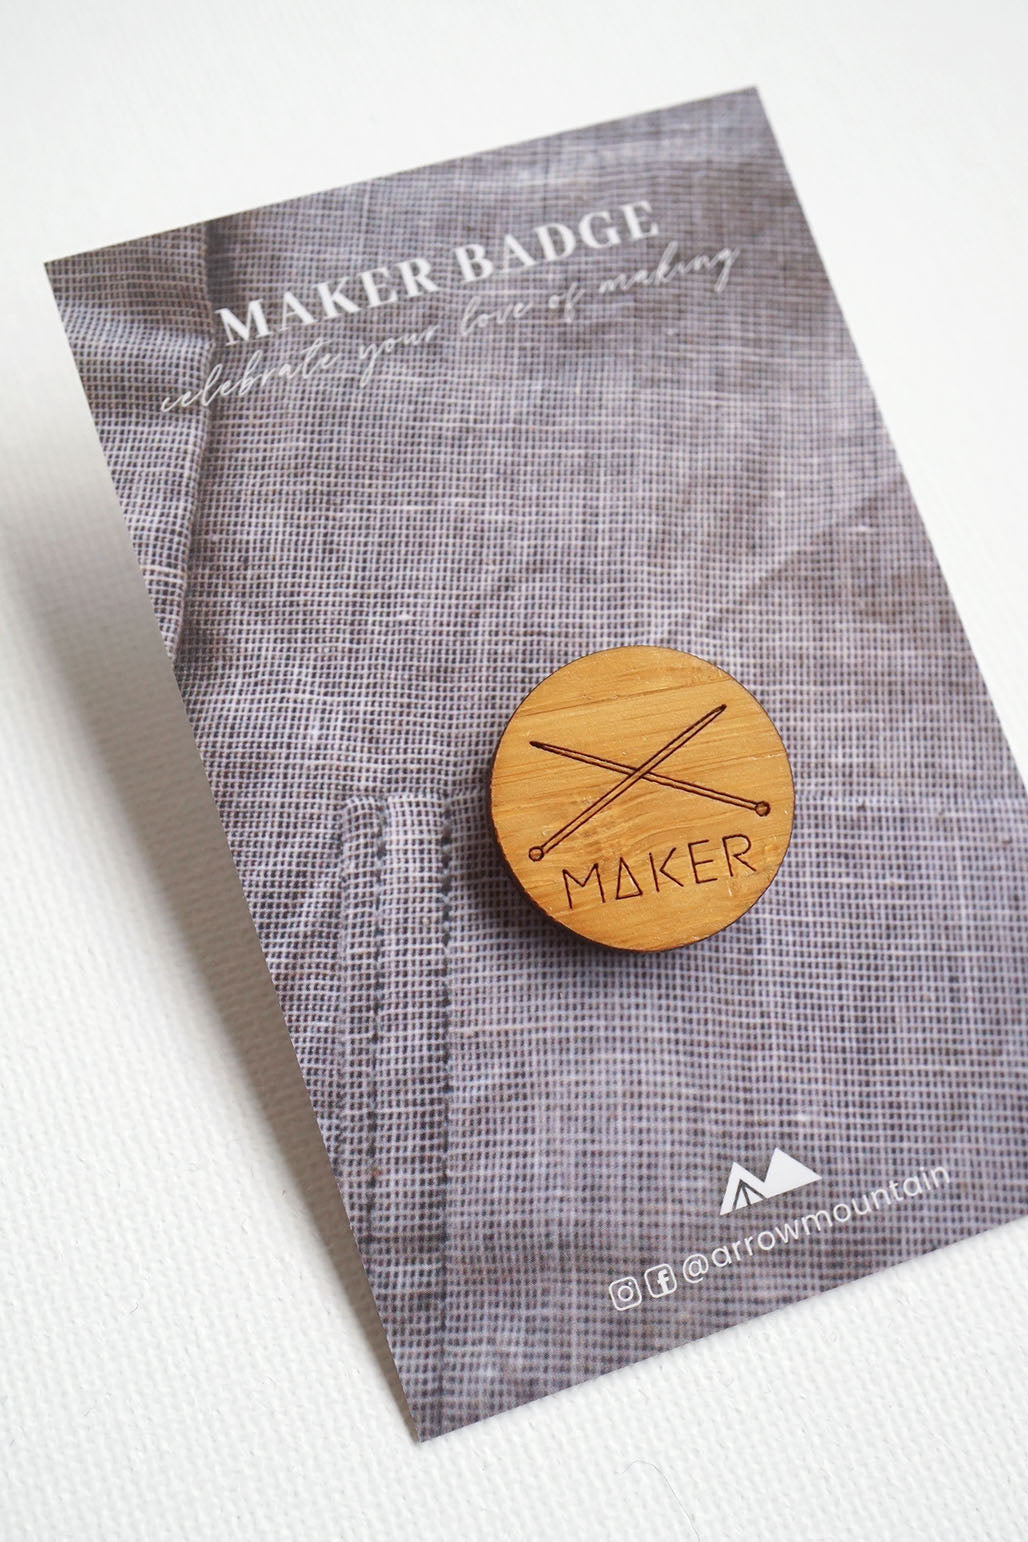 The Maker Badge - Knitting